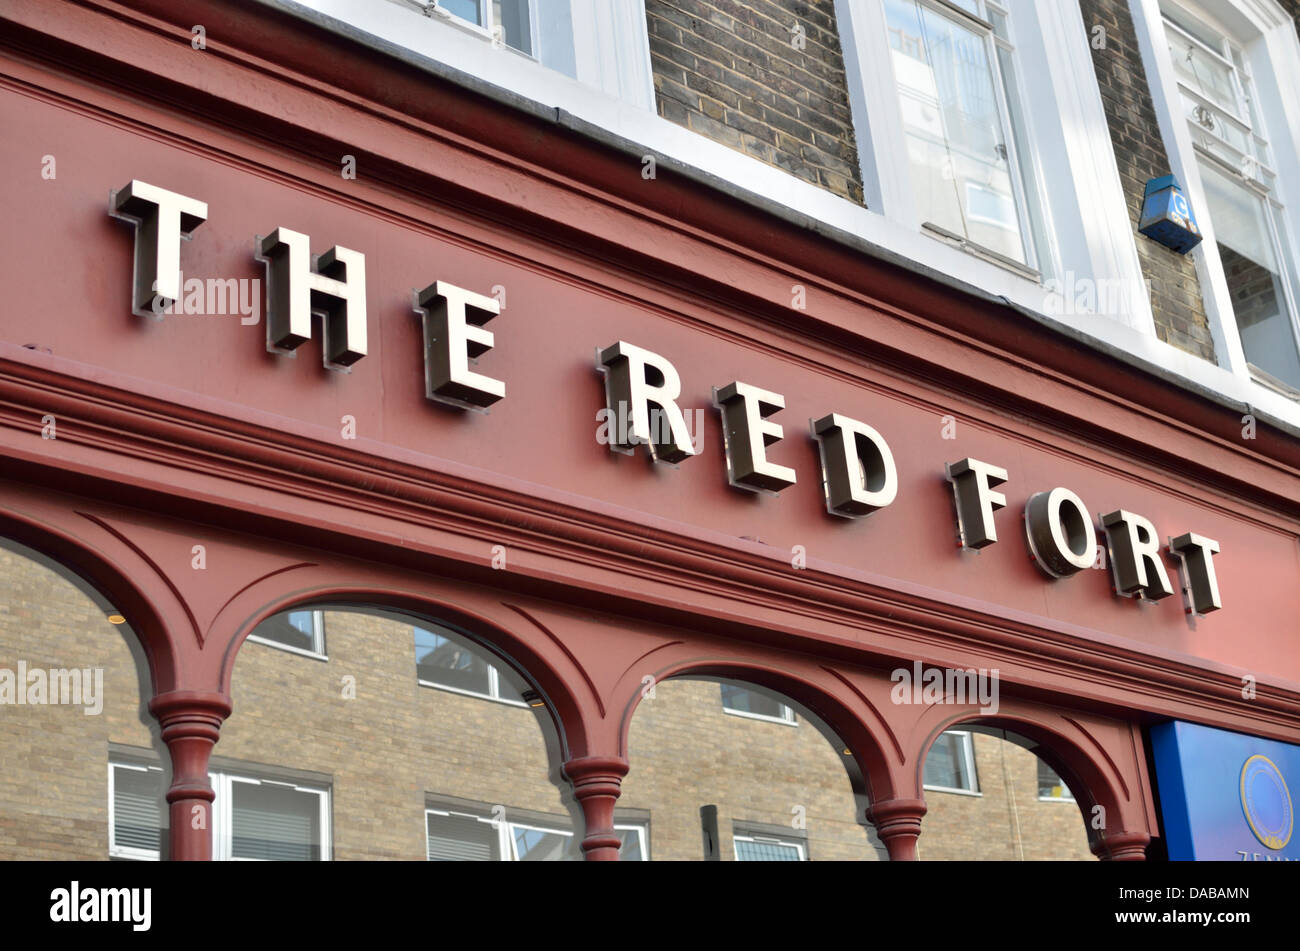 Red Fort Indian restaurant on Dean Street, Soho, London, UK. Stock Photo